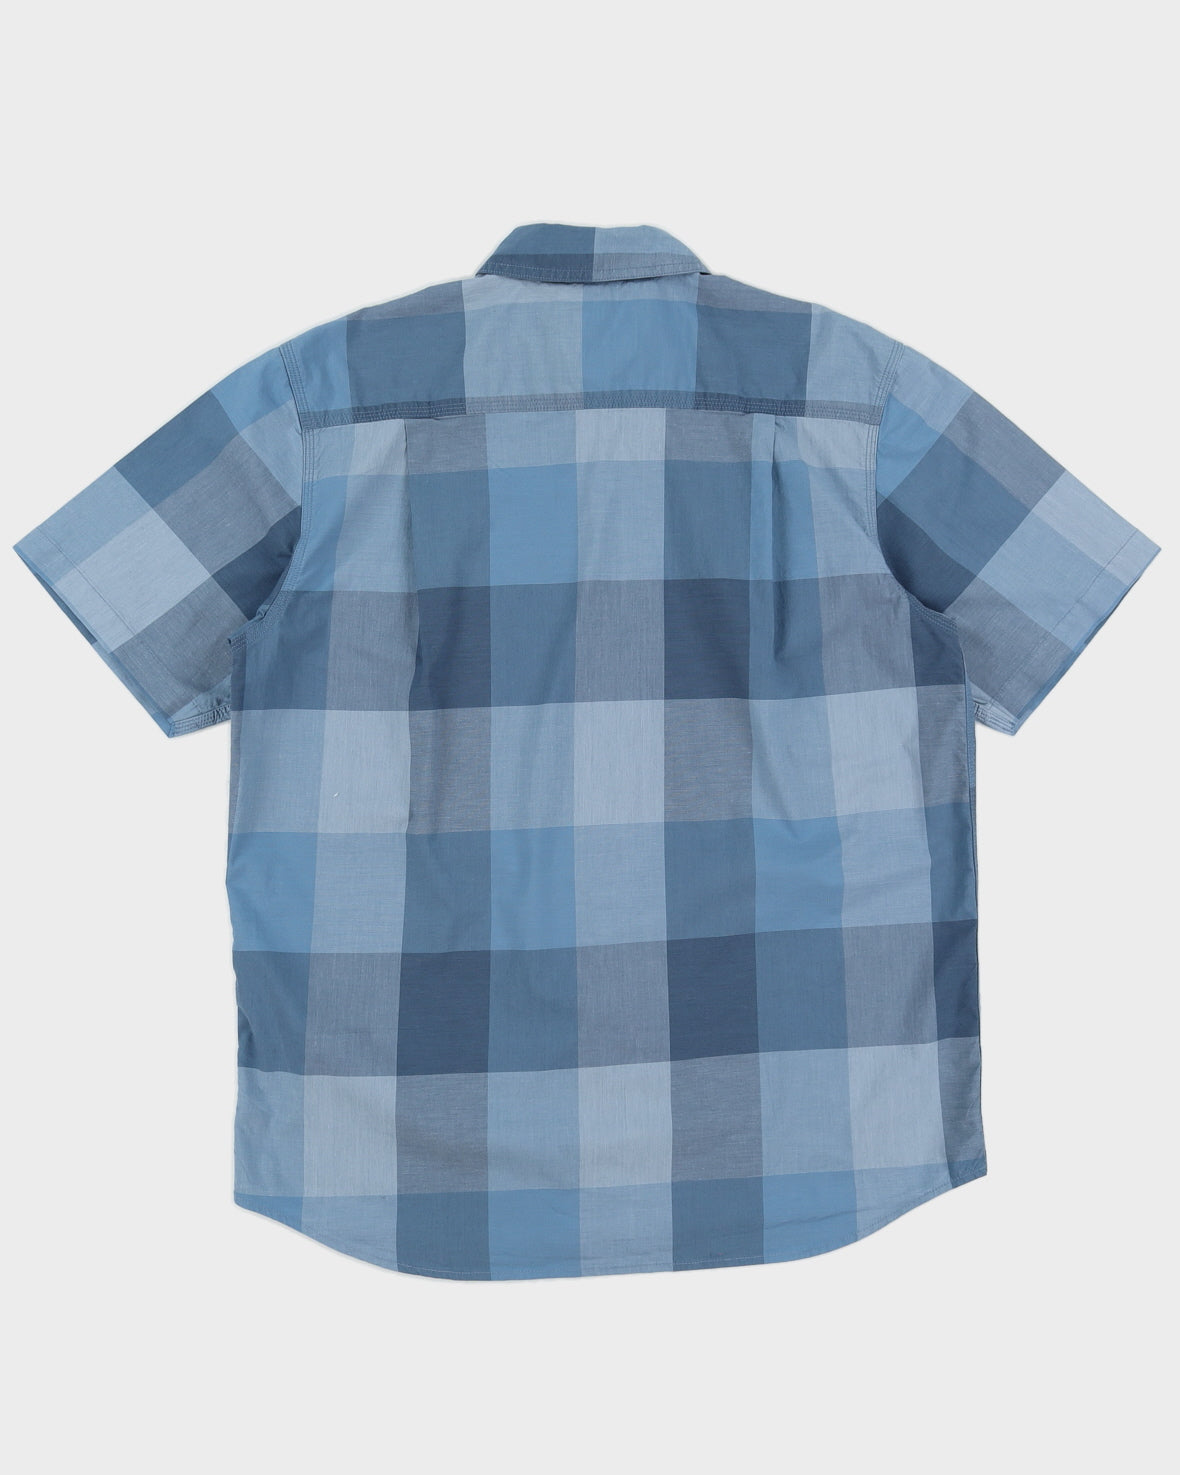 Carhartt Blue Checkered Short Sleeve Shirt - L